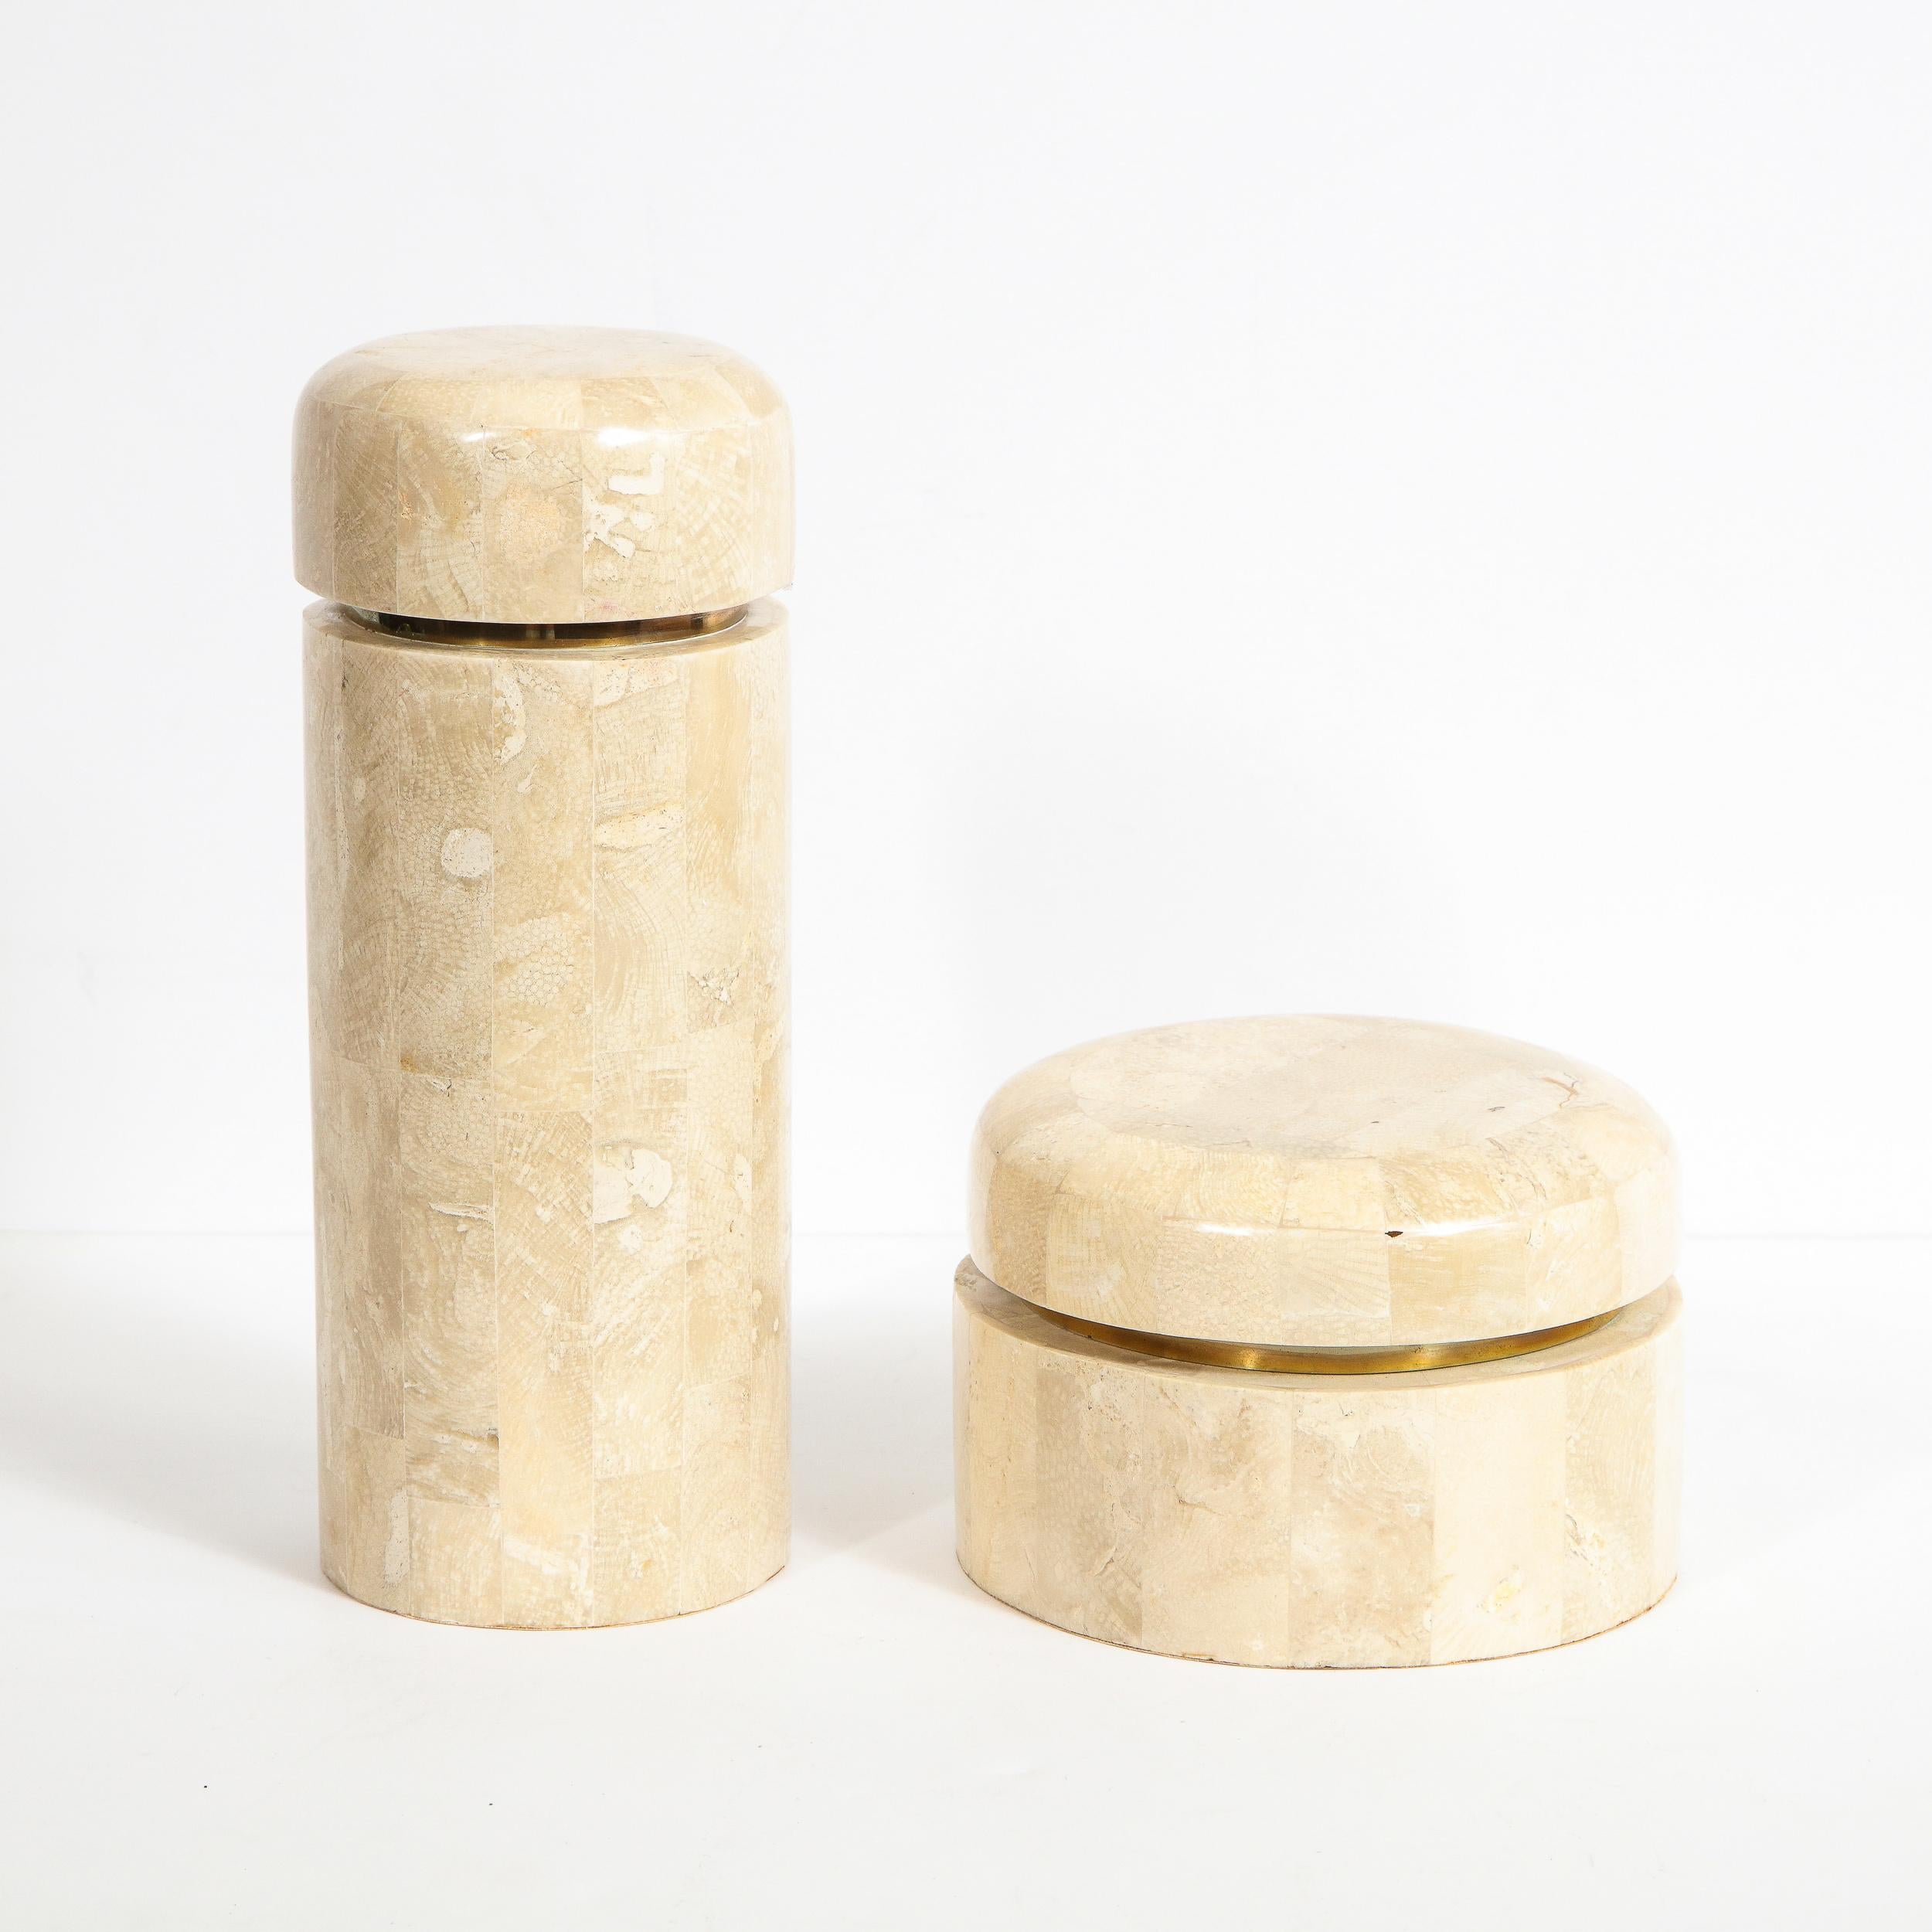 Cette élégante paire de boîtes modernistes a été réalisée par le célèbre cabinet de design du XXe siècle Maitland Smith aux Philippines, vers 1980. Elles présentent deux corps cylindriques - l'un plus court et plus grand en diamètre, l'autre plus